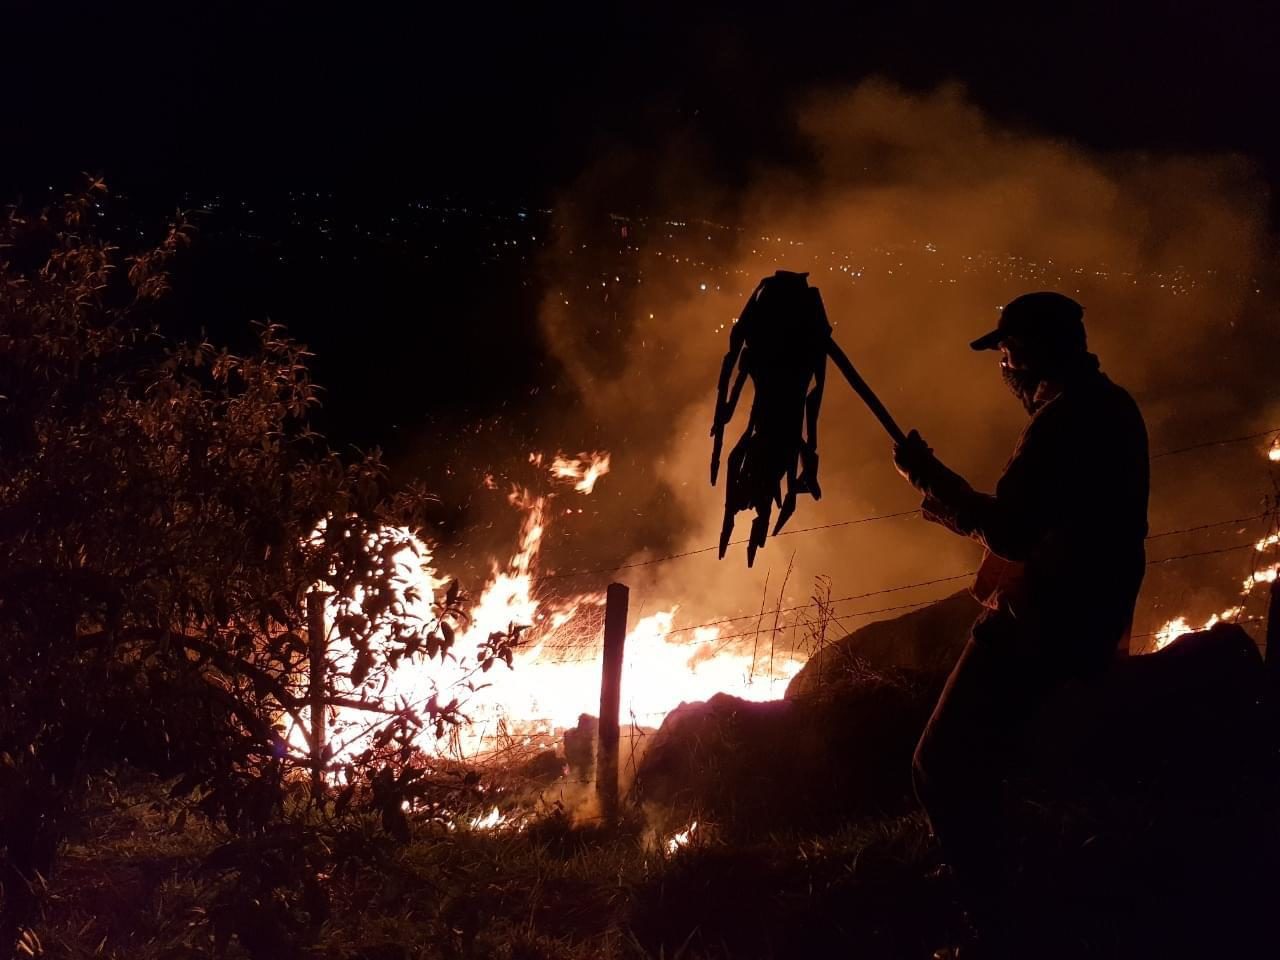 DESCRIÇÃO DE IMAGEM: foto noturna de incêndio. Labaredas são combatidas por homem, com equipamento abafador